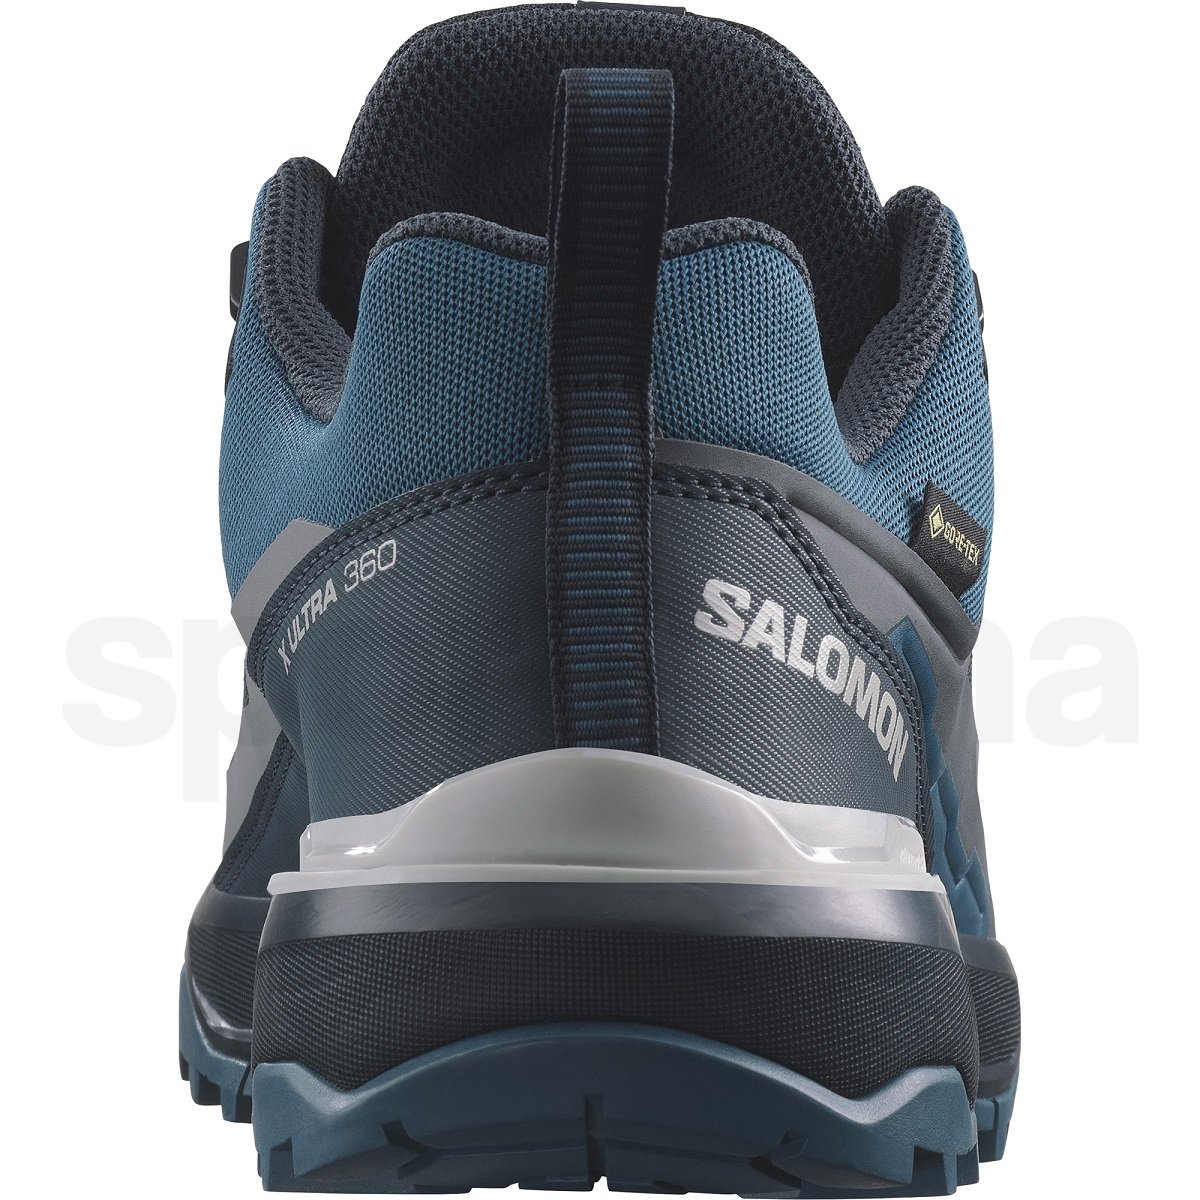 Obuv Salomon X Ultra 360 GTX M - modrá/černá